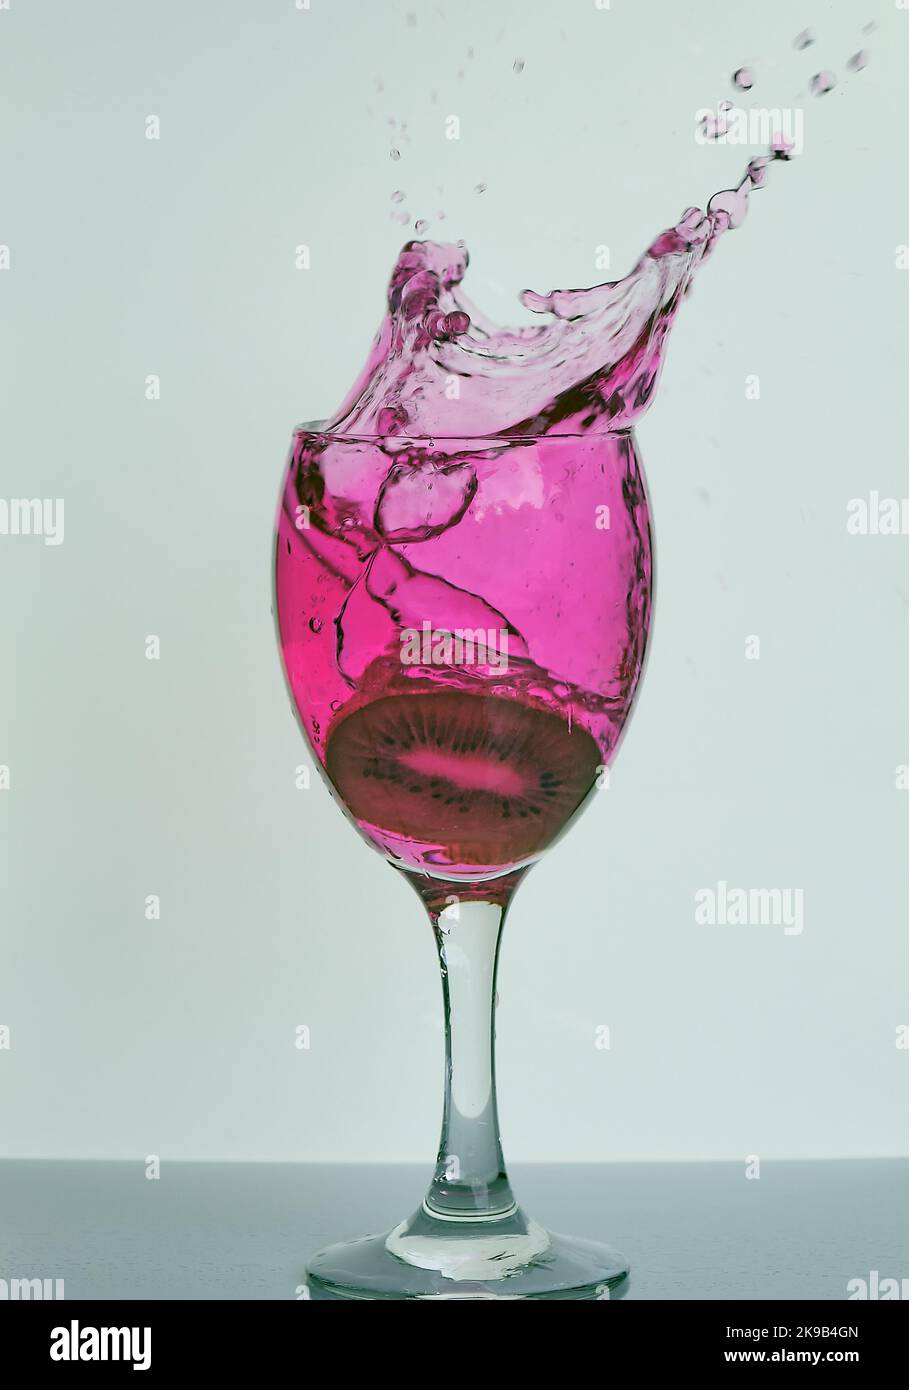 Fruits éclaboussant dans le vin, l'esprit, le verre à cocktail, magnifique cadre de gel de gouttelettes d'eau liquide rose vibrantes dispersées dans l'air pour les bars, la fête, les pubs. Banque D'Images